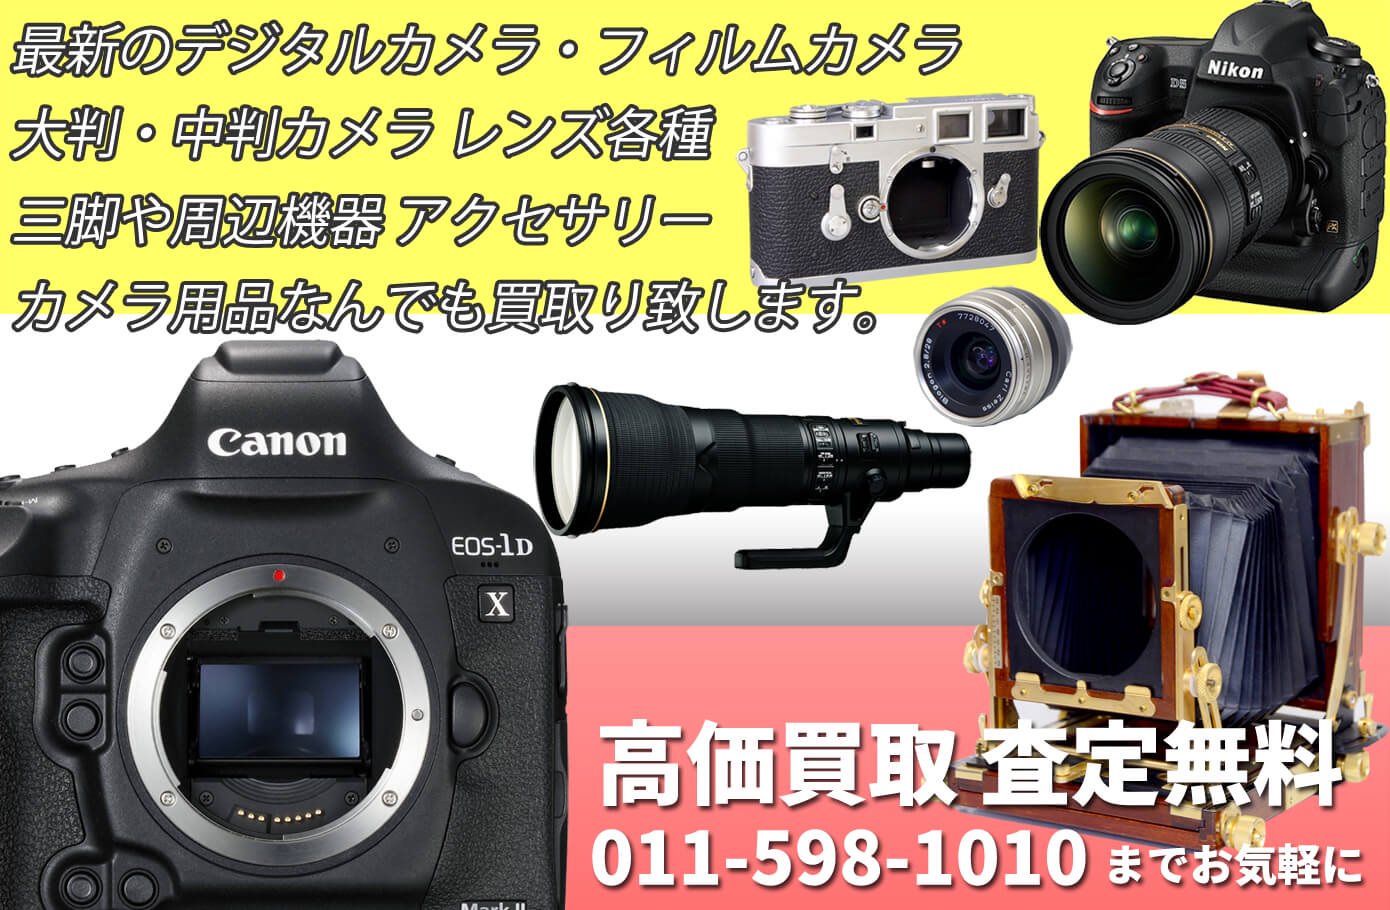 中古カメラ・デジタルカメラの専門店 アンティークカメラから最新のデジタルカメラまで高価買取致します。中古カメラ・レンズ・アクセサリーの買取・処分もお任せください。